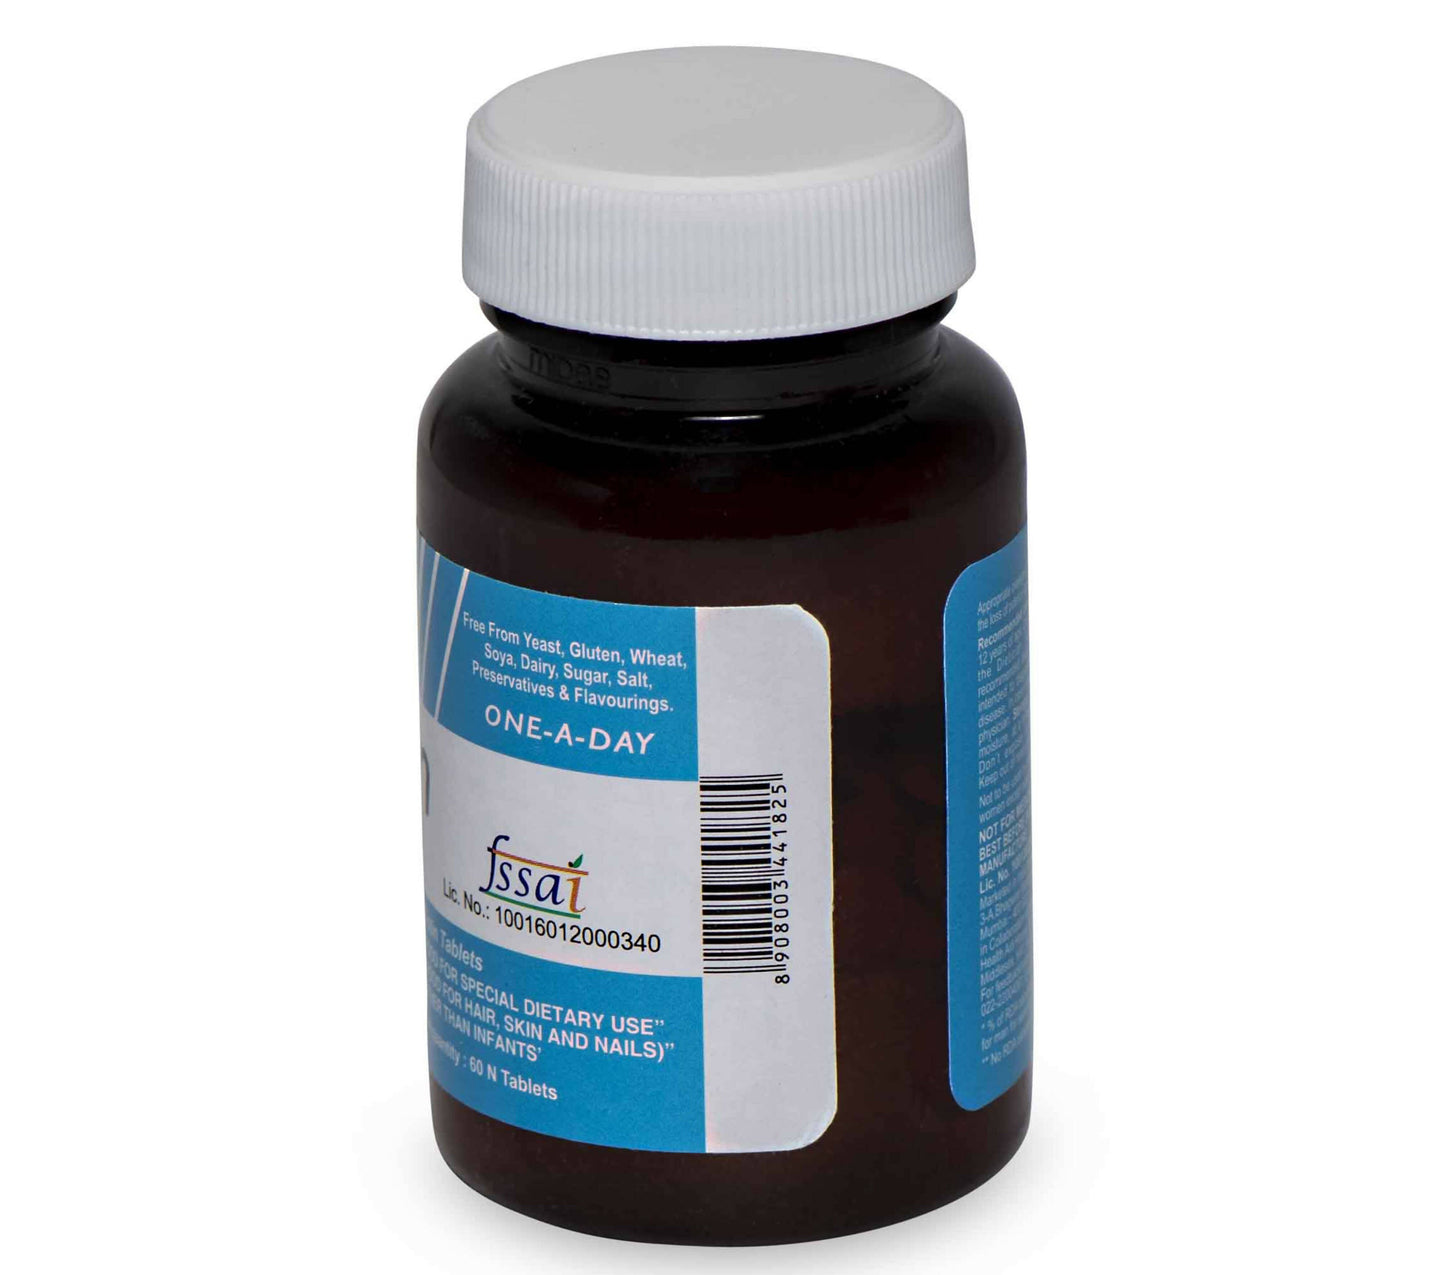 HealthAid Biotin 5000 mcg Tablets